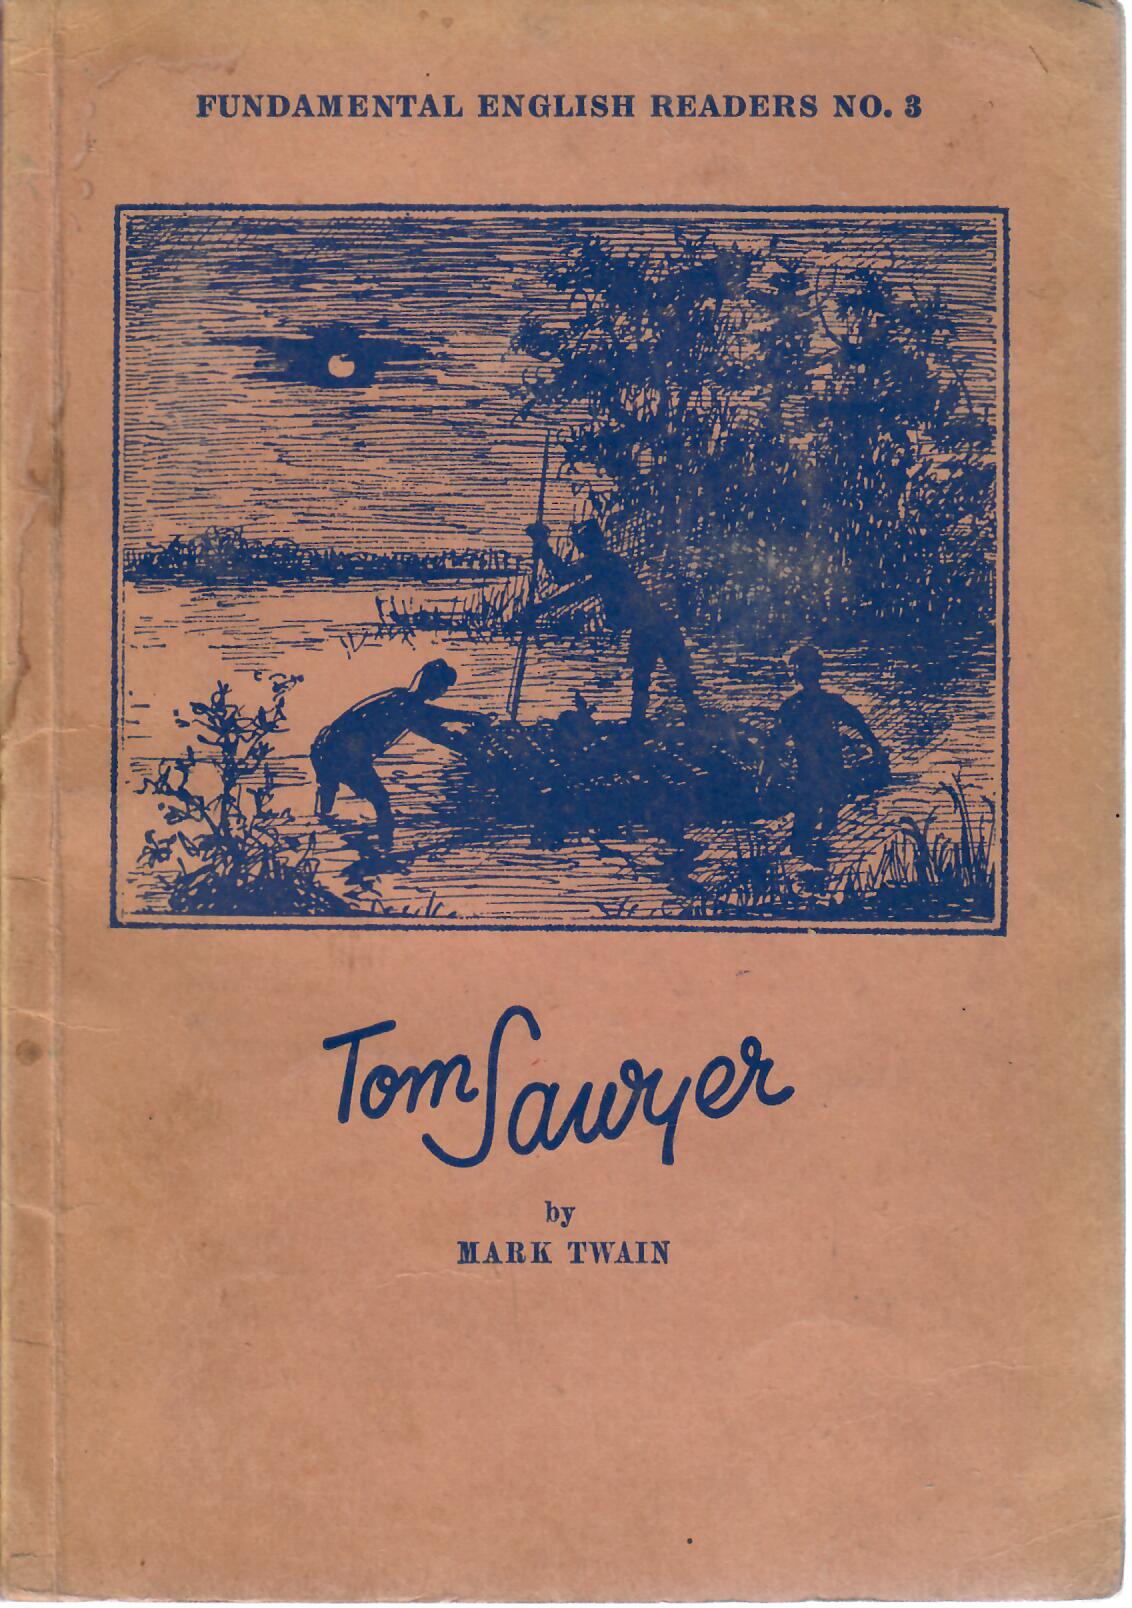 Twain, Mark   : Tom Sawyer by Mark Twain : Fundamental English Readers No. 3 : herausgegeben im Auftrage der 